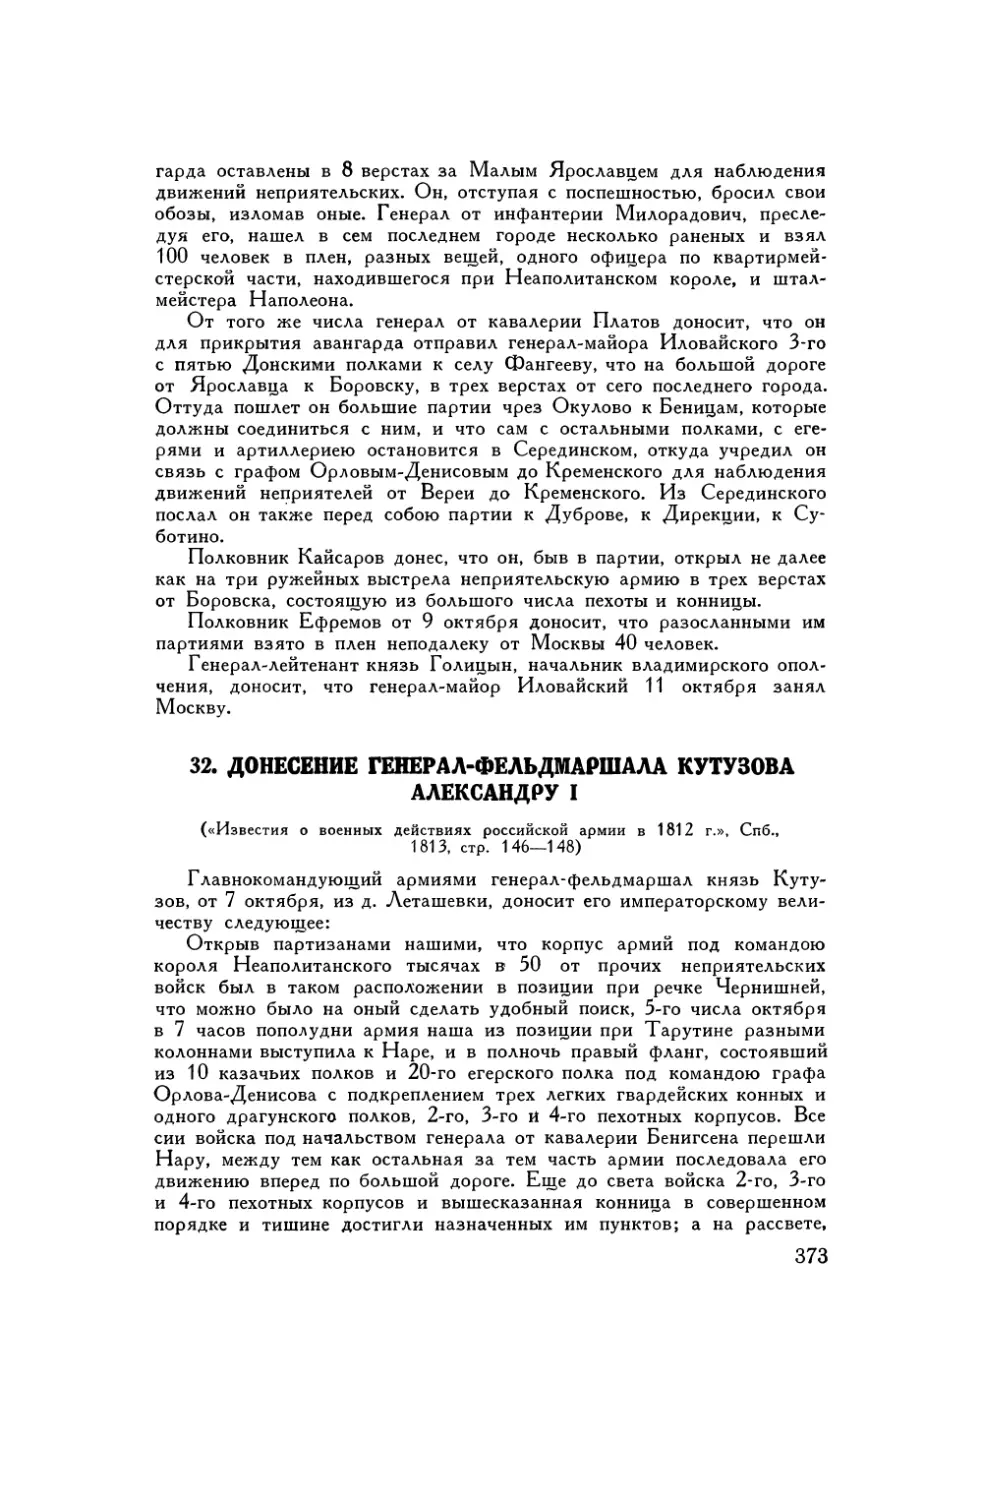 32. Донесение генерал-фельдмаршала Кутузова Александру I от 7 октября 1812 г.